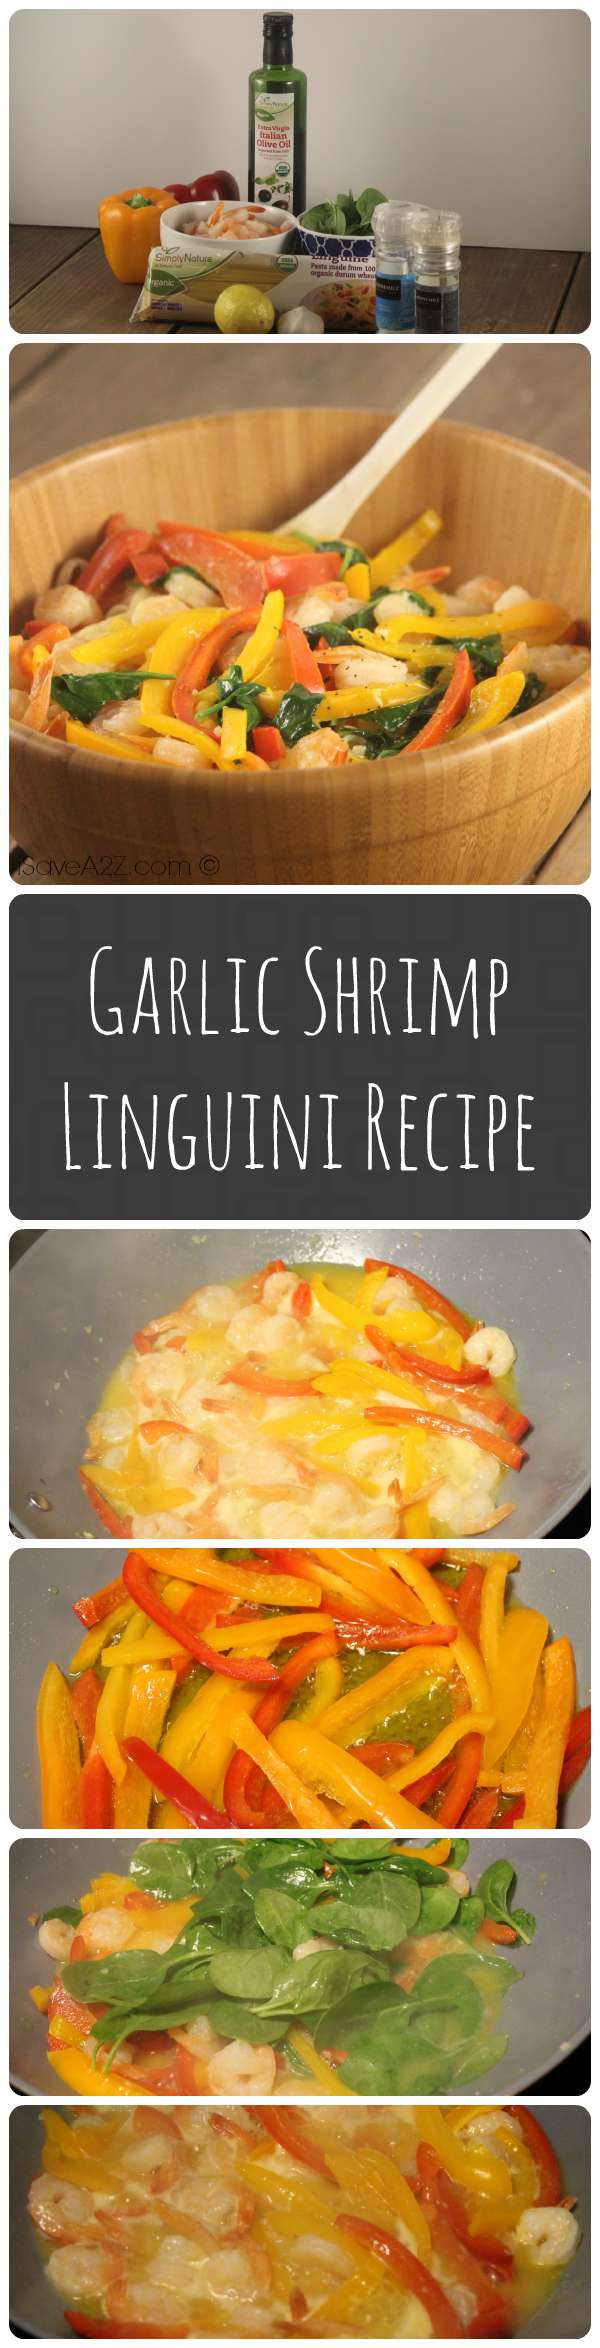 Garlic Shrimp Linguini Recipe